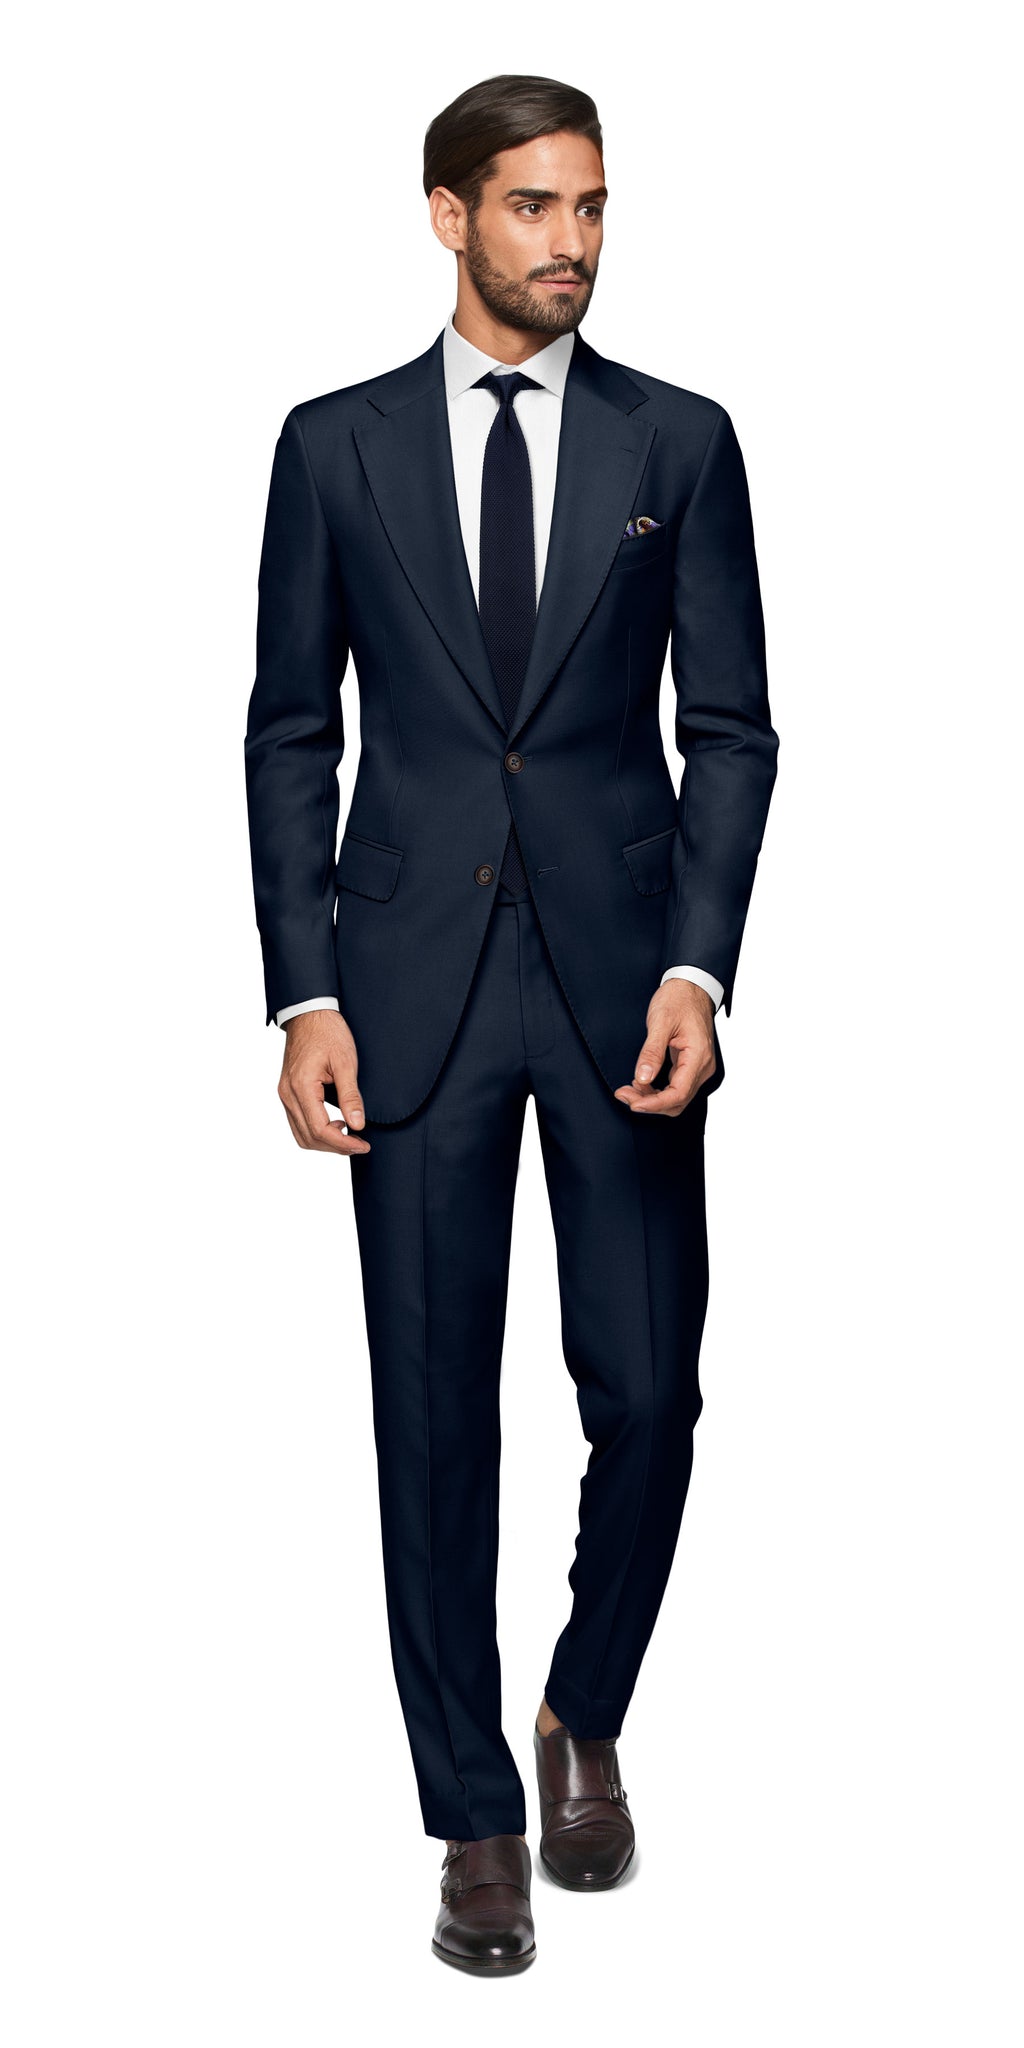 Taranto Blue Suit